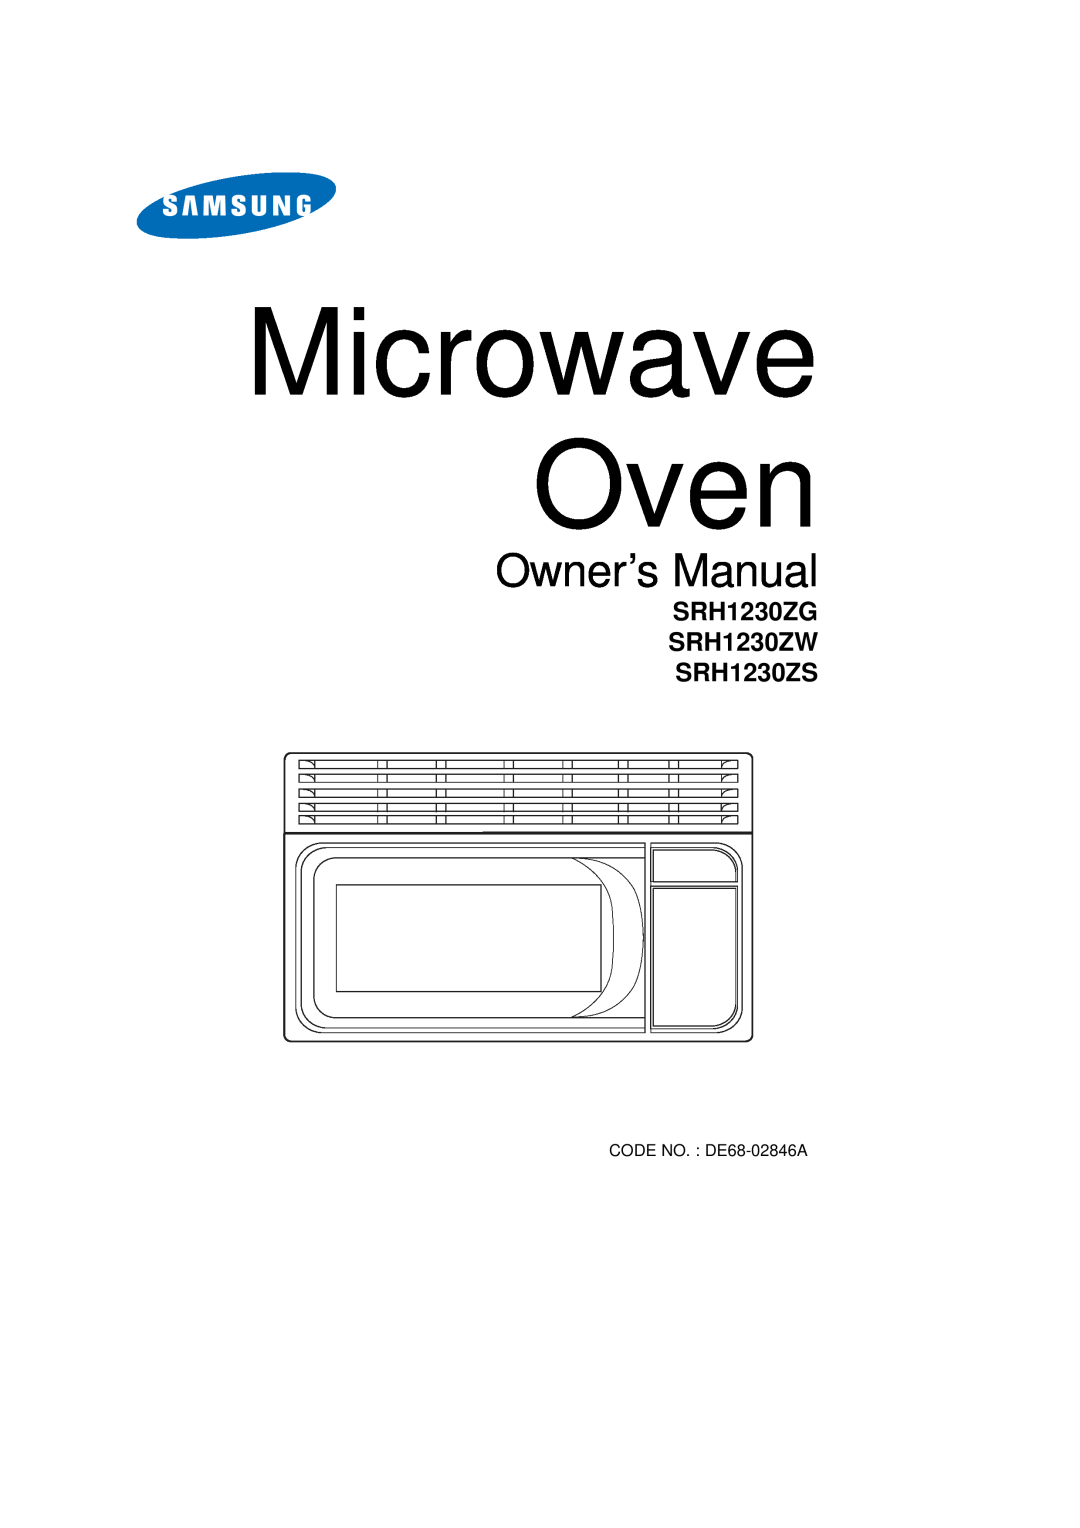 Samsung owner manual Microwave Oven, SRH1230ZG SRH1230ZW SRH1230ZS, CODE NO. DE68-02846A 